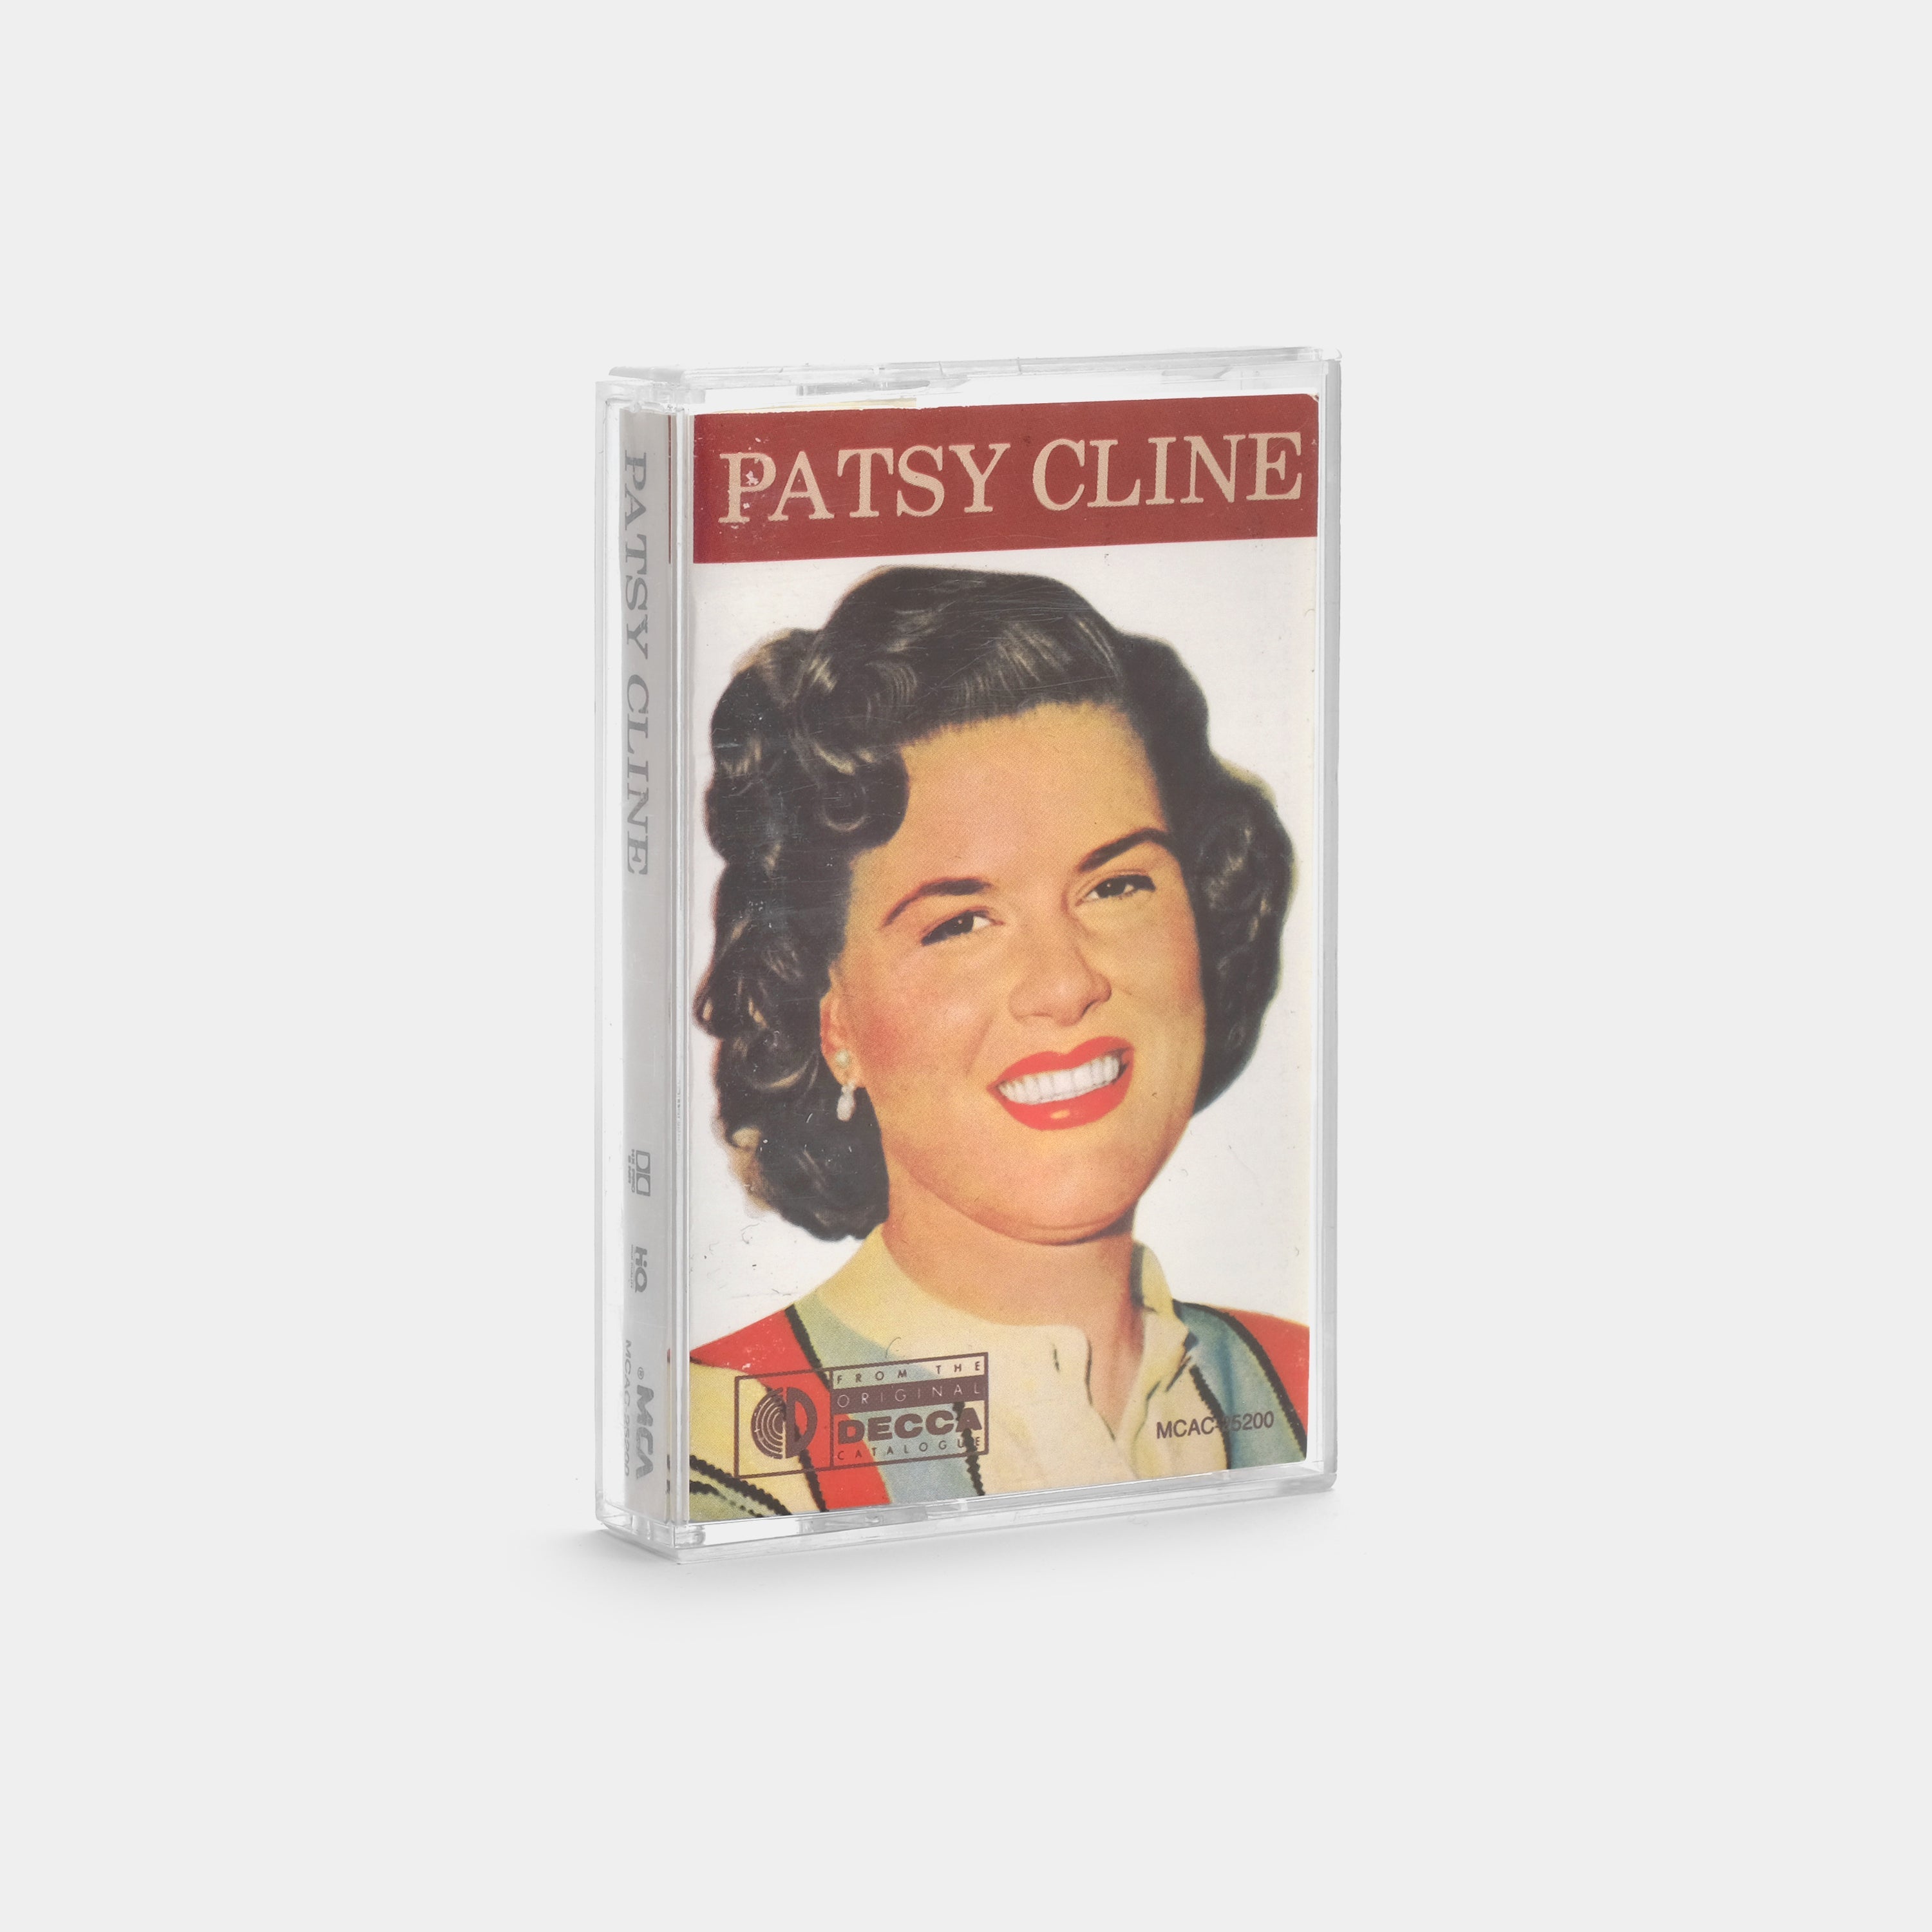 Patsy Cline - Patsy Cline Cassette Tape